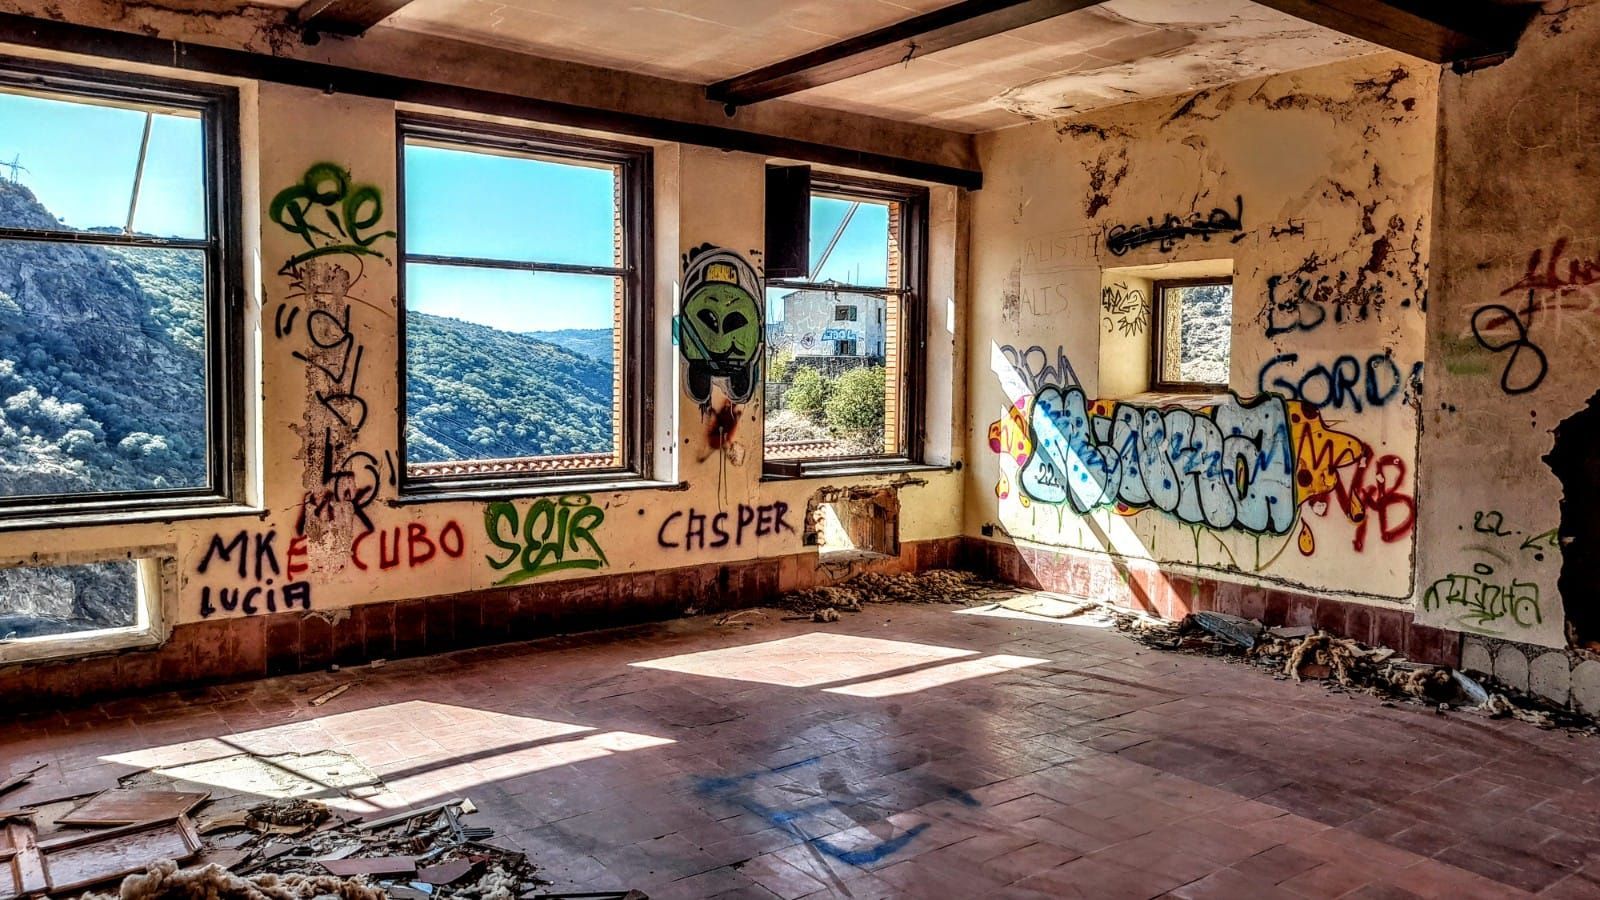 Imágenes del pueblo vacío de Zamora, con escuela, farmacia y cuartel, que se vende por 240.000 euros